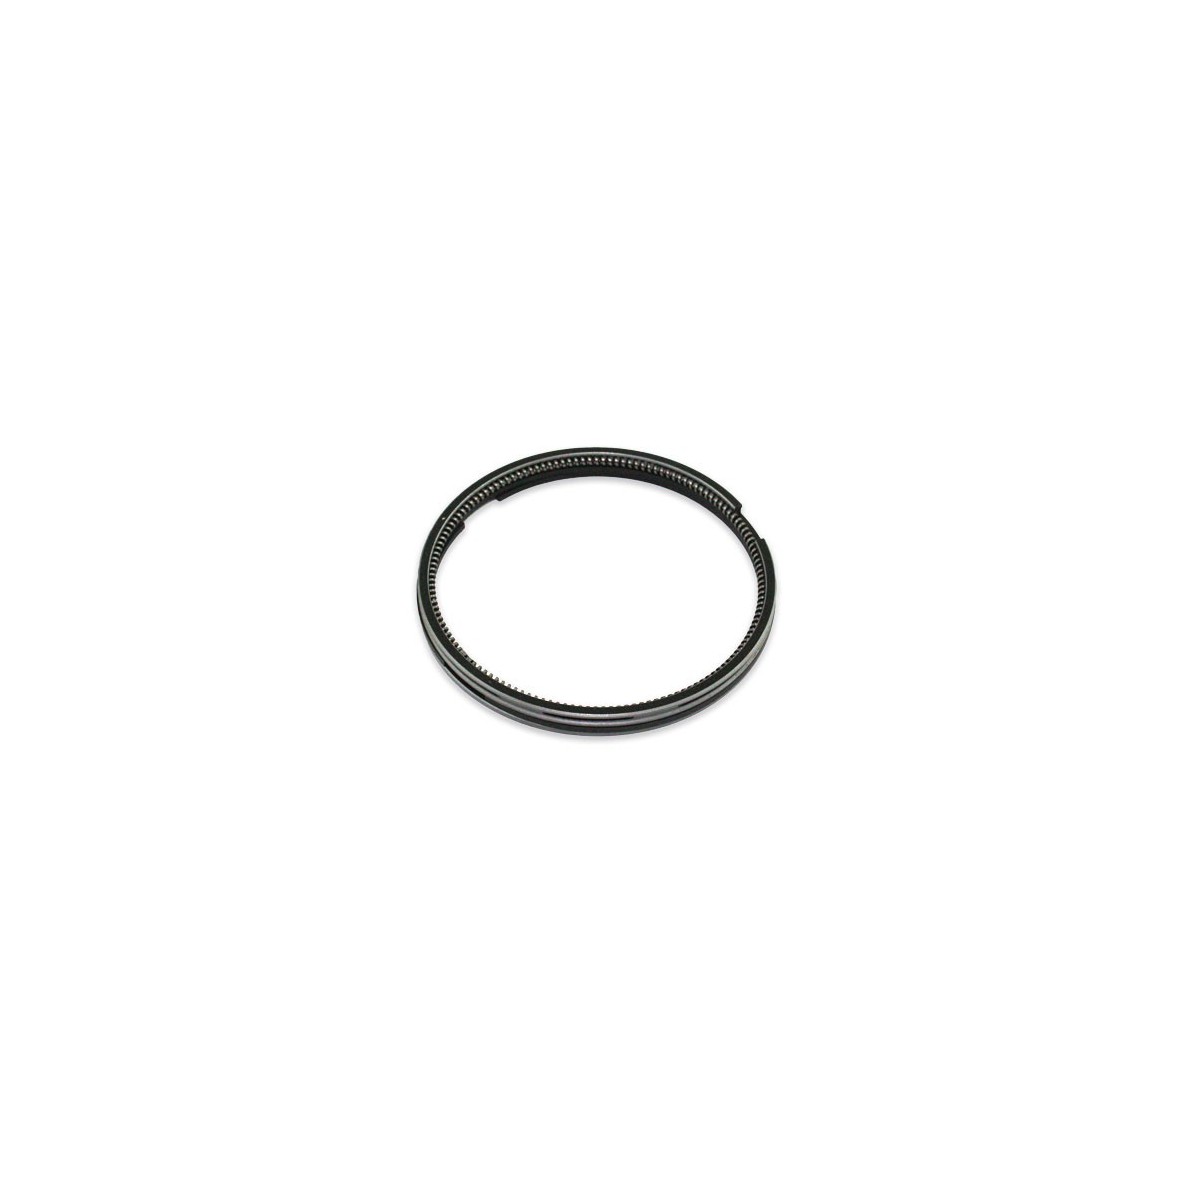 Zestaw pierścieni 70mm ISEKI TU13F 70 : 2.5 x 2.5 x 4 STD